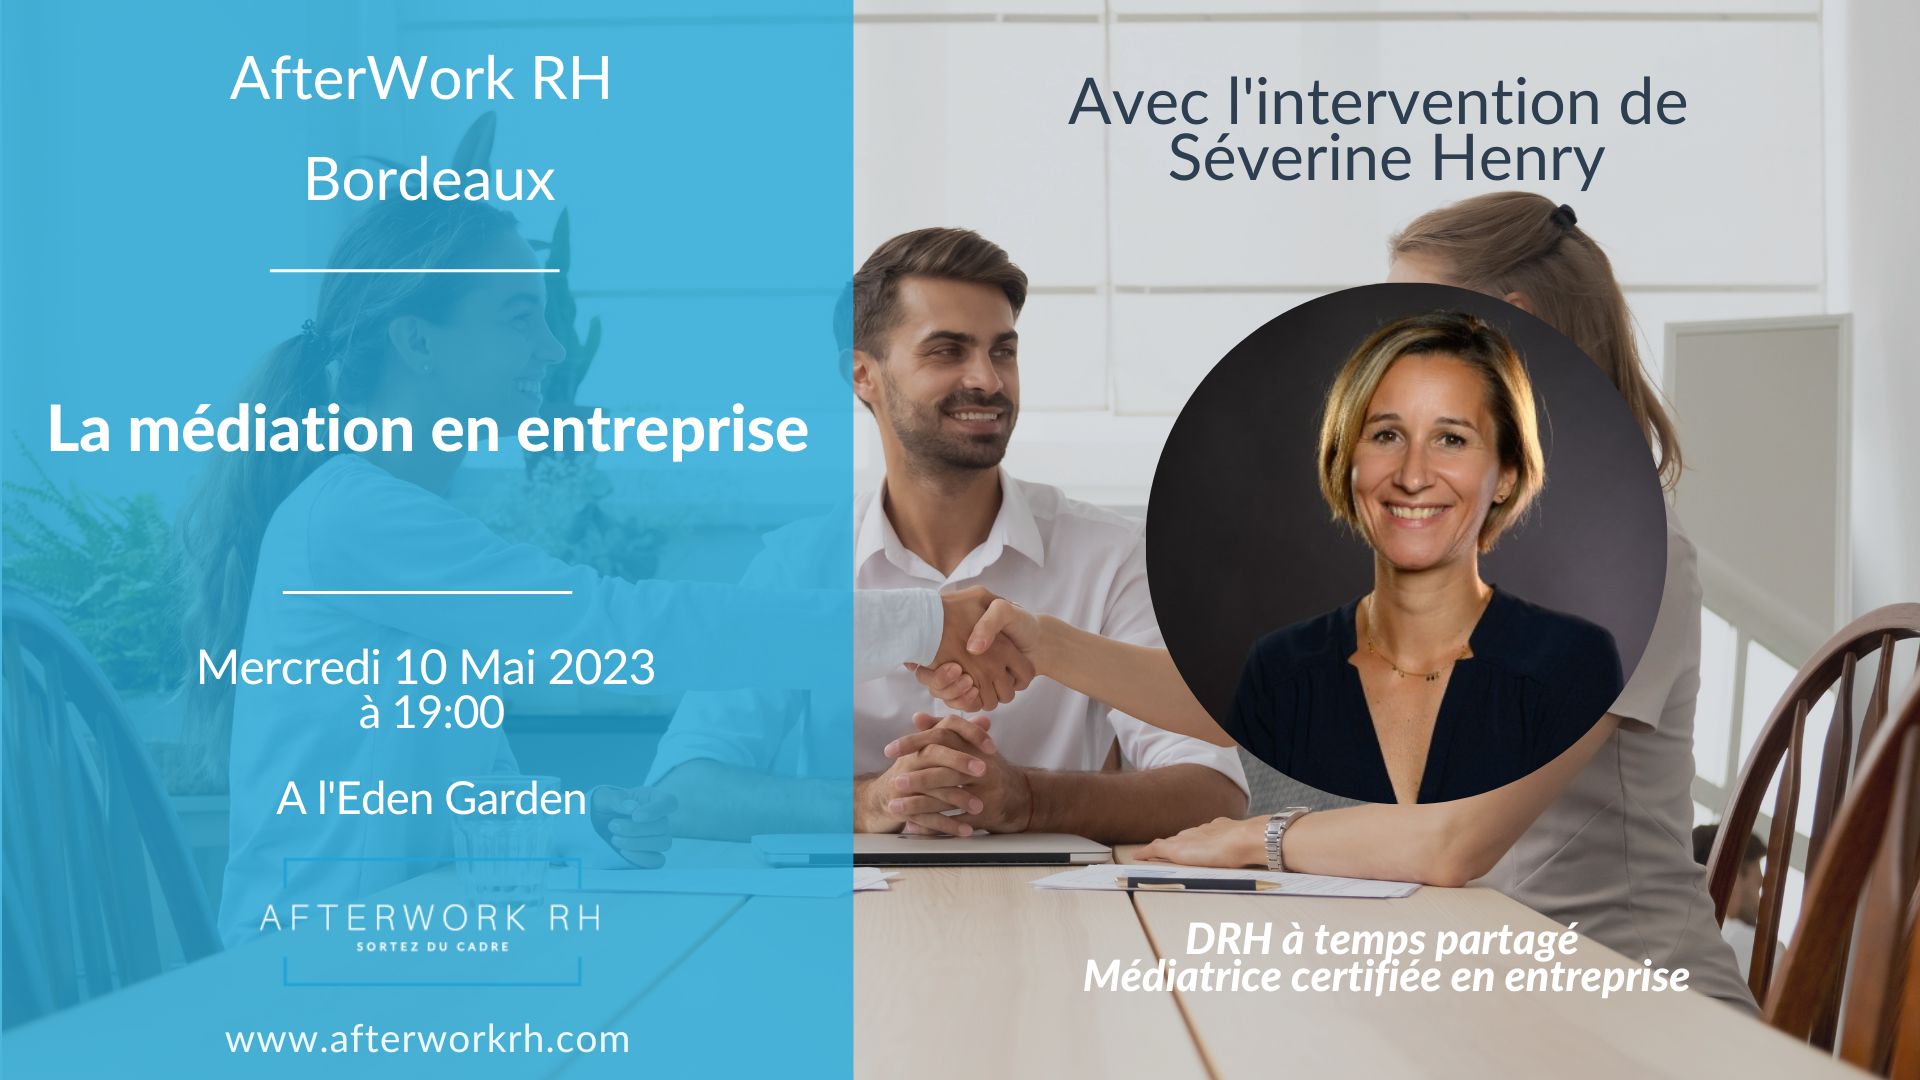 La médiation en entreprise - AfterWork RH Bordeaux - mai 2023